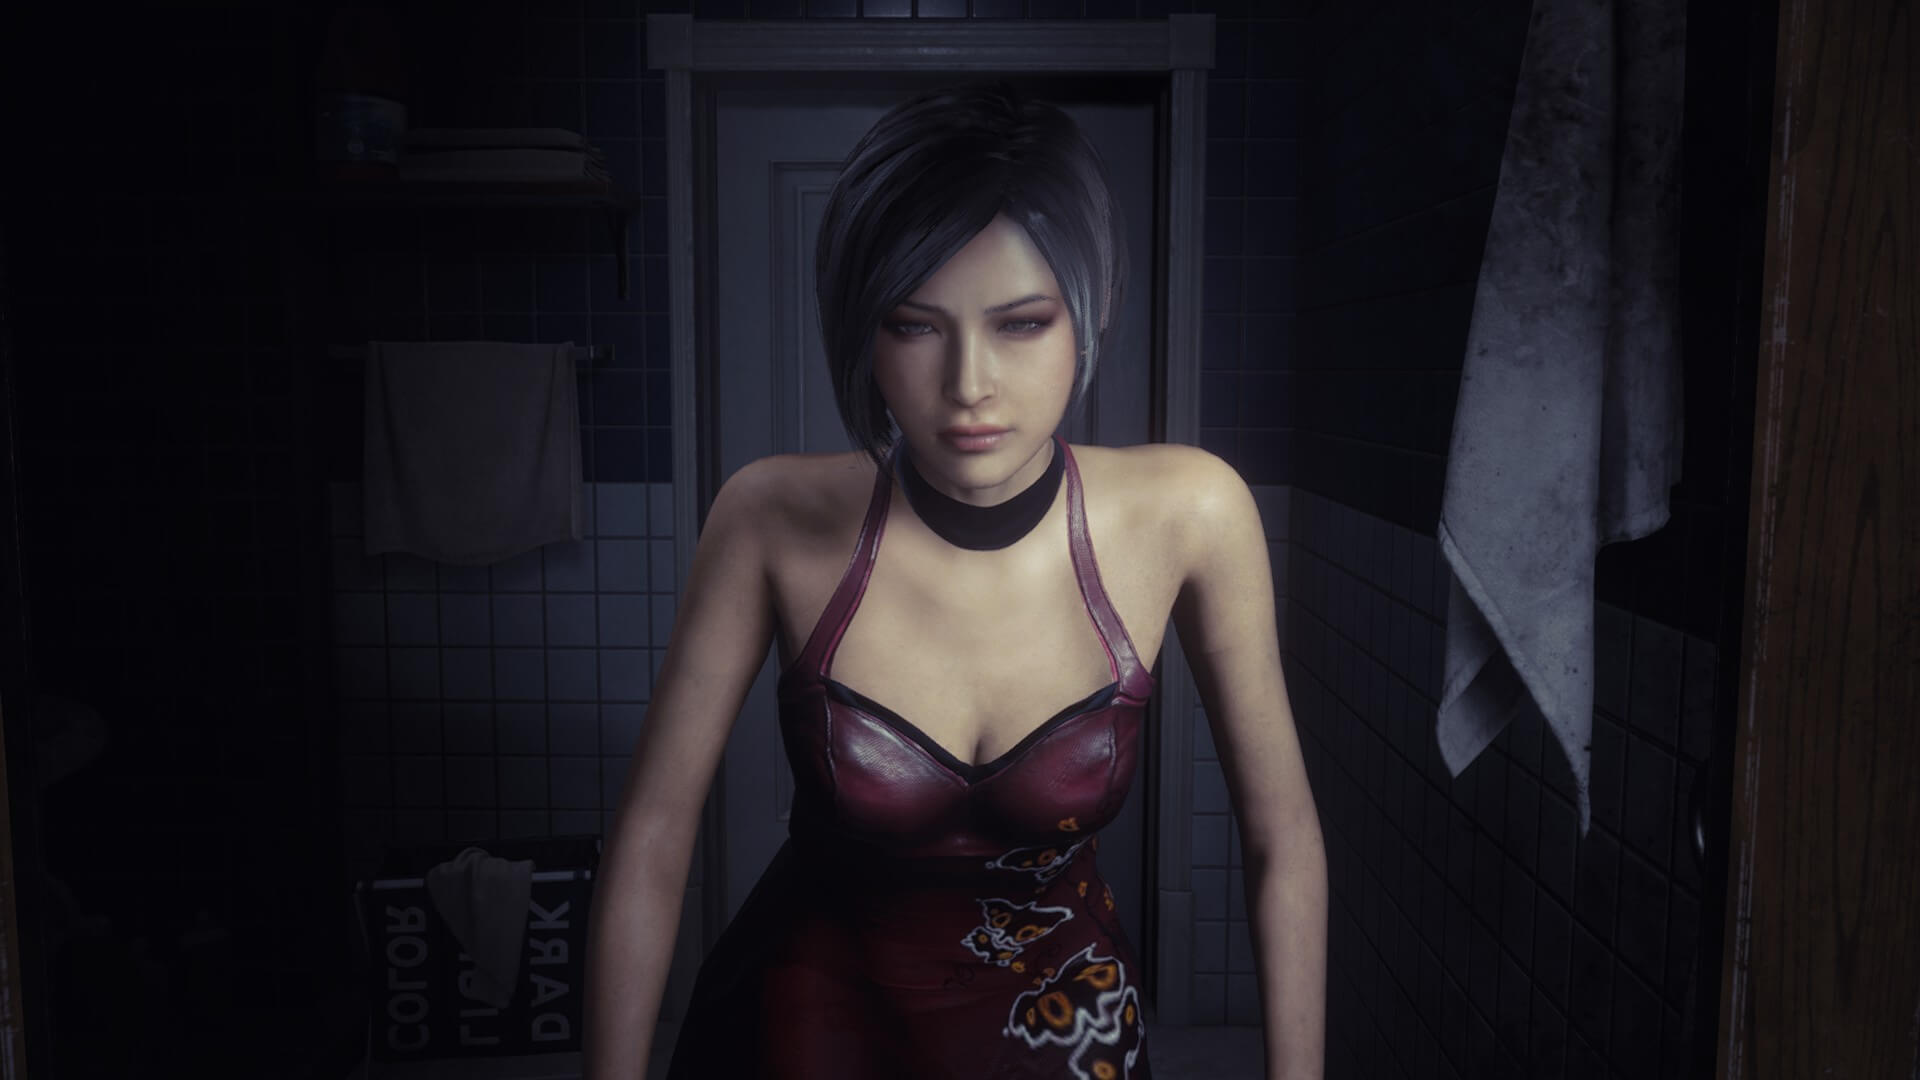 resident-evil-remake-screenshots-confirms-ada-wong-as-playable-my-xxx-hot-girl